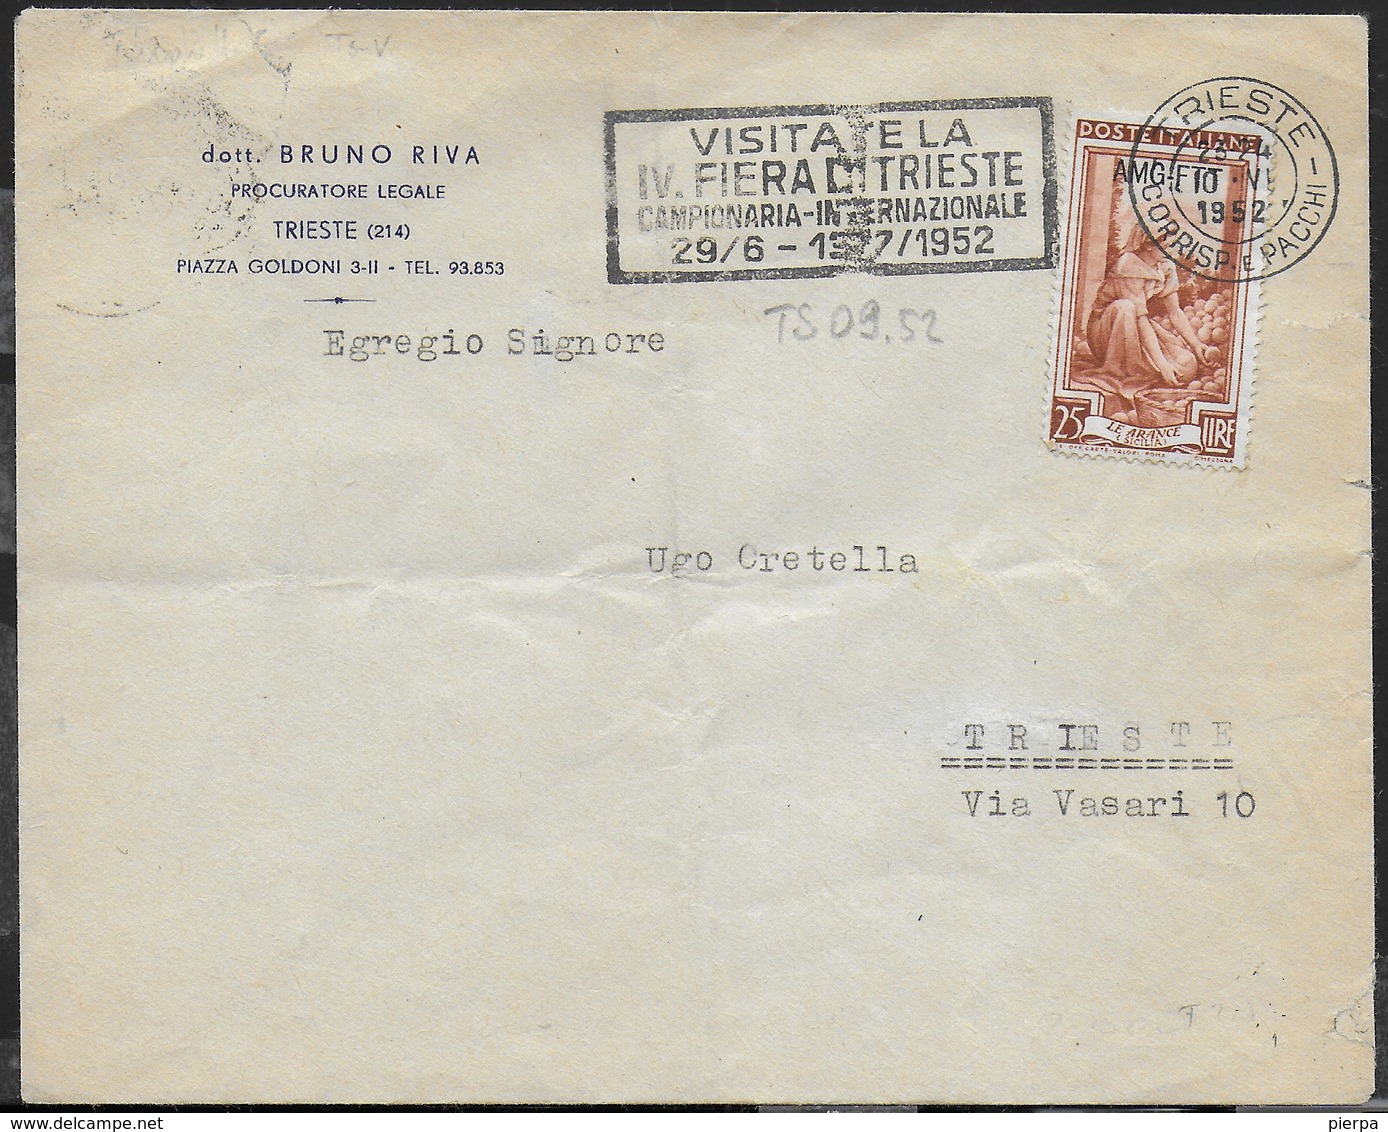 ANNULLO A TARGHETTA " VISITATE LA IV FIERA DI TRIESTE..."  10.06.1952 - CATALOGO ORNAGHI TS 09.52 SU BUSTA INTESTATA - Storia Postale